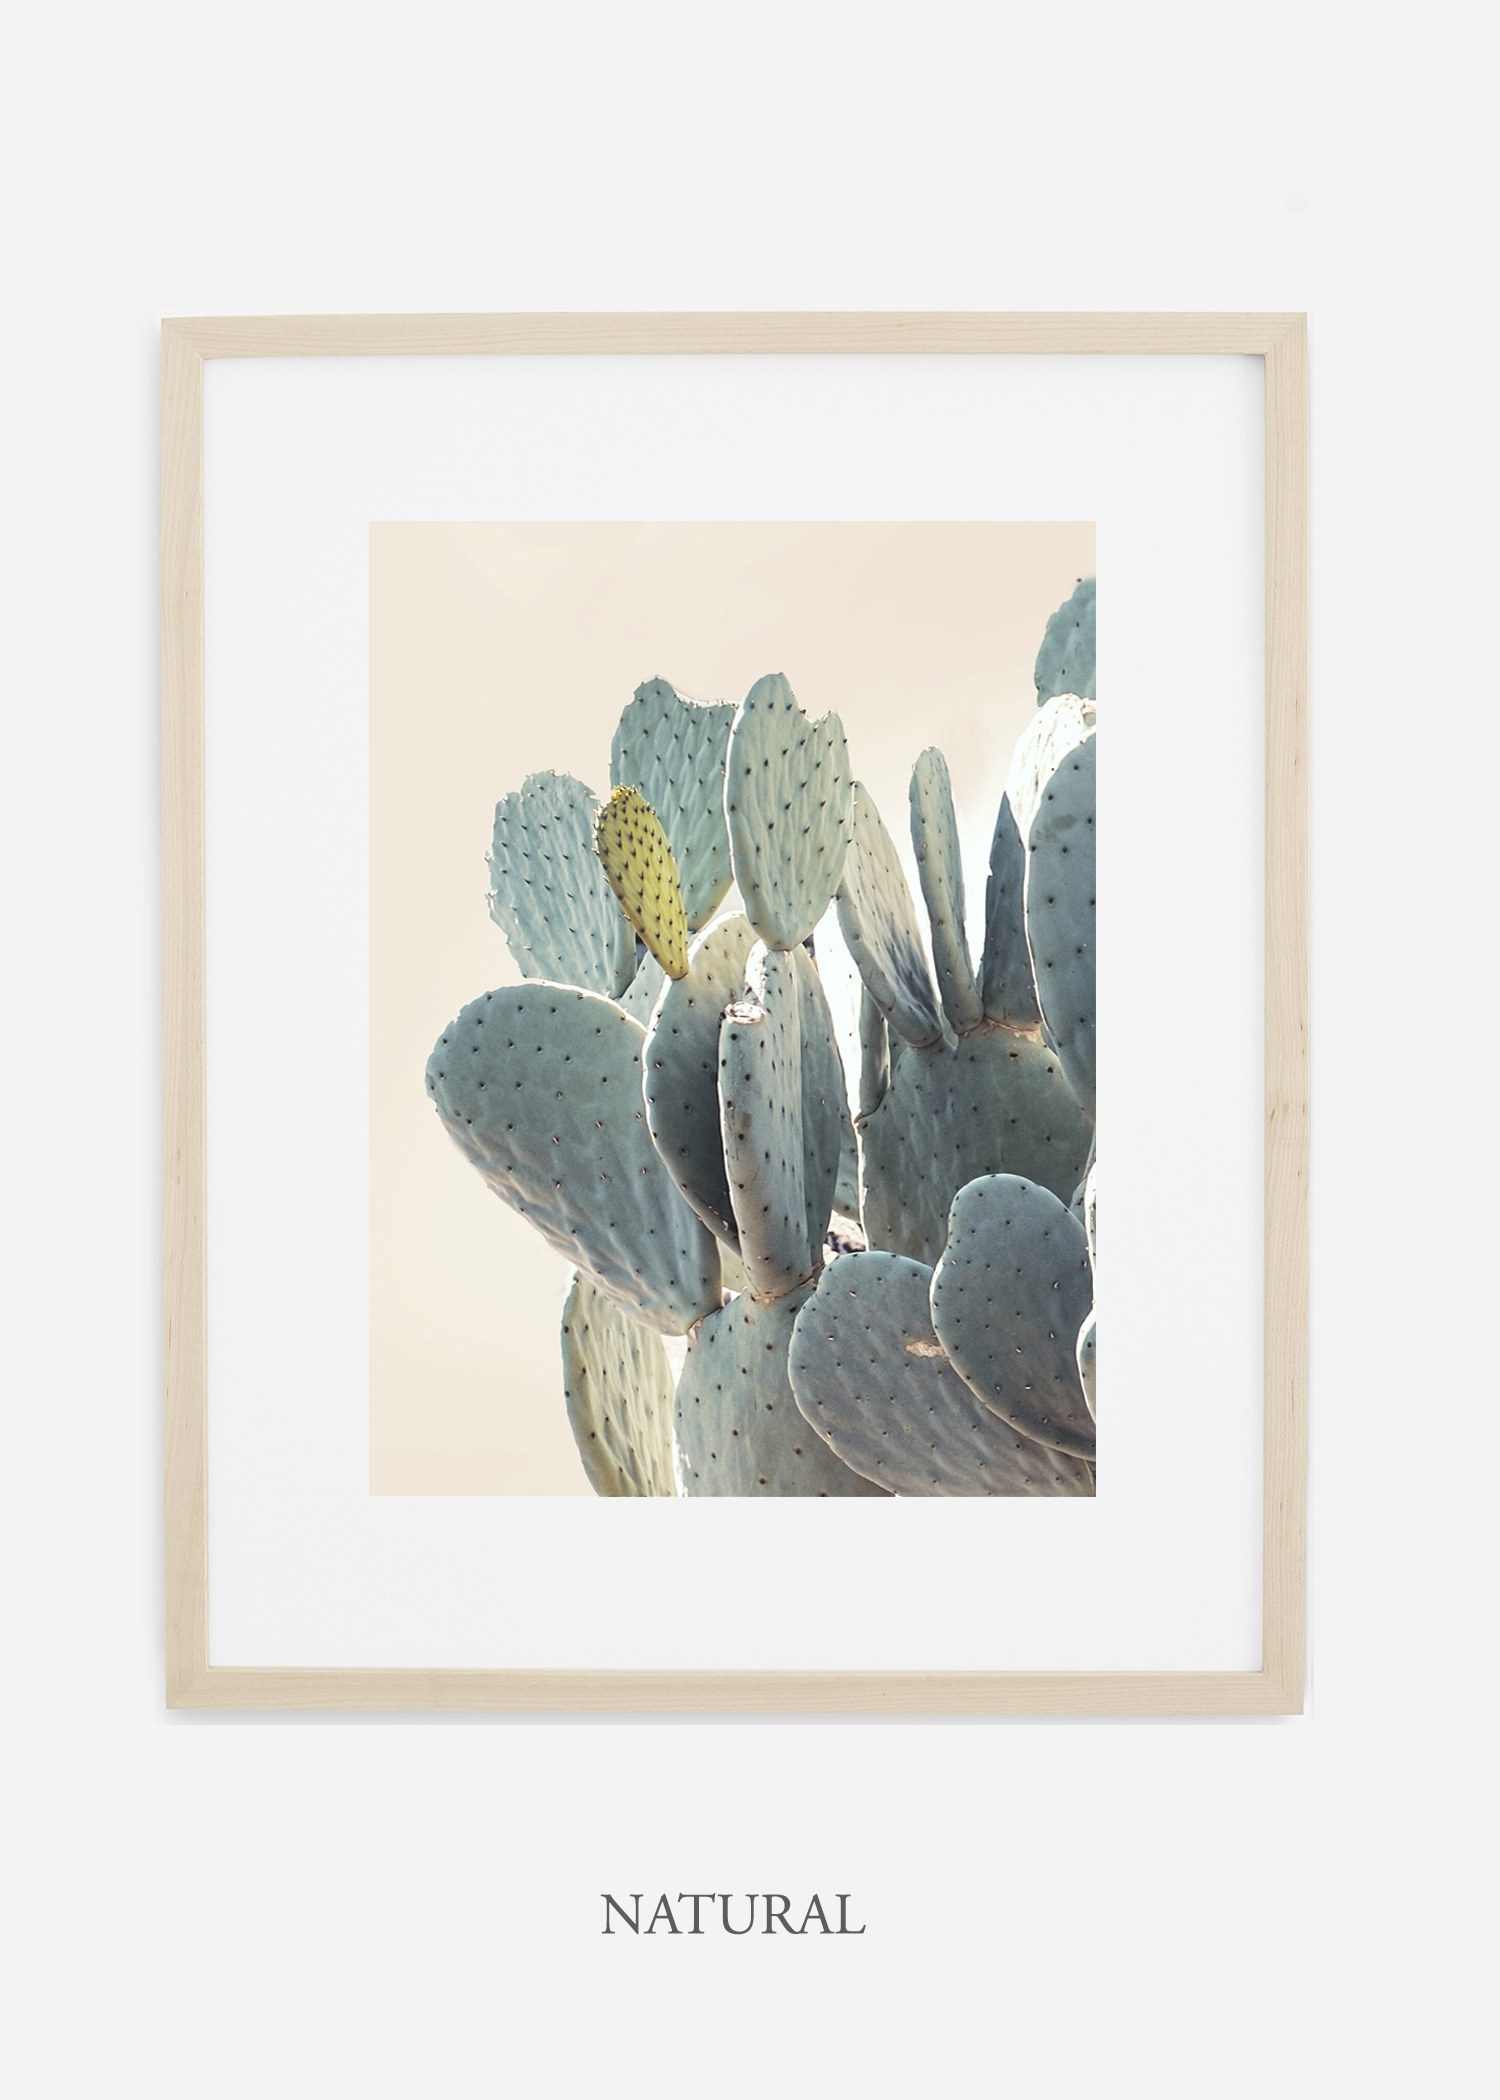 Desert_naturalframe_DesertDetails_Cactus__Art_Photography_interiordesign_bohemian_cactusart.jpg